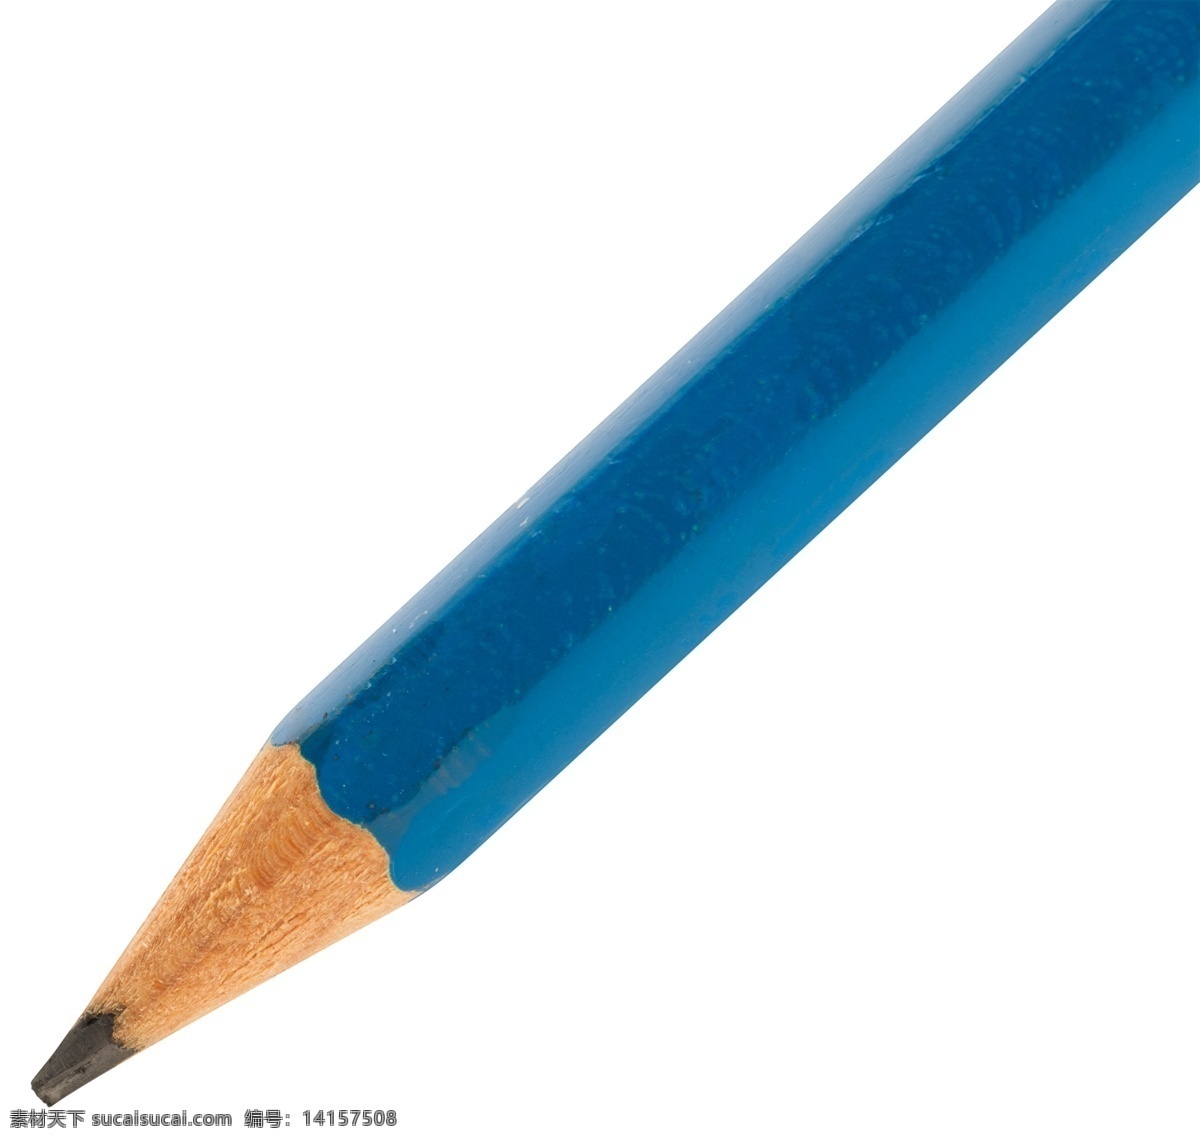 铅笔图片 铅笔 蓝色铅笔 文具铅笔 教育元素 教育素材 教学元素 教学素材 文具 生活百科 学习用品